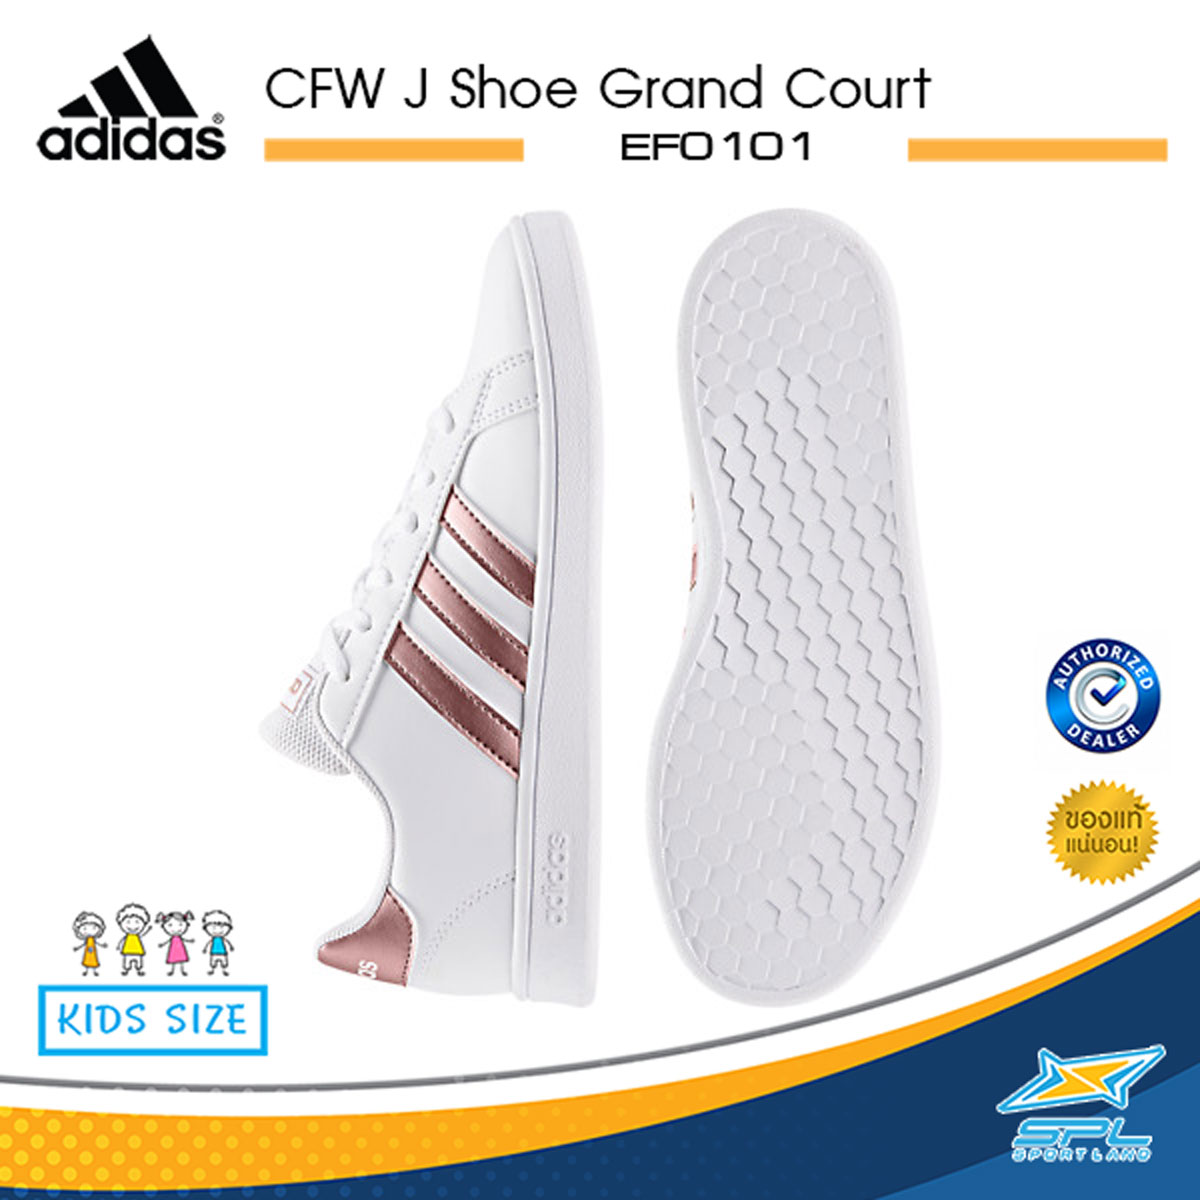 Adidas รองเท้า อาดิดาส รองเท้าแฟชั่นเด็ก รองเท้าผ้าใบเด็ก Cfw Junior Shoe Grand Court Ef0101 (1200). 